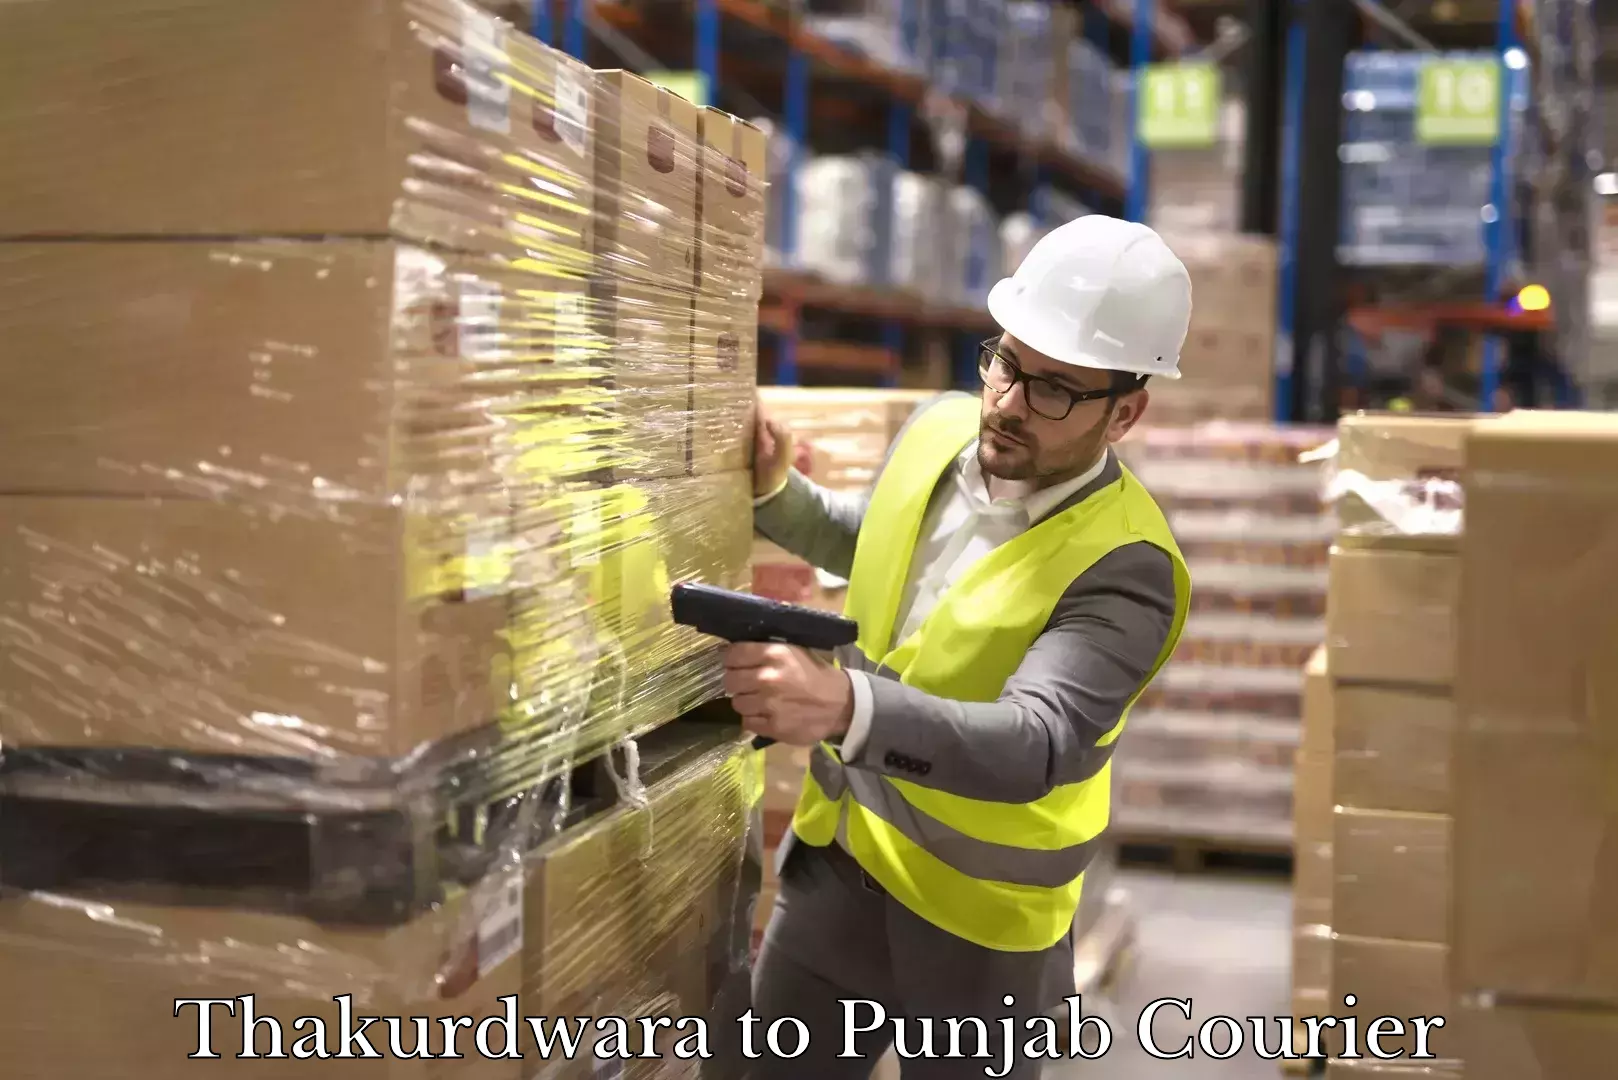 Professional courier handling Thakurdwara to Punjab